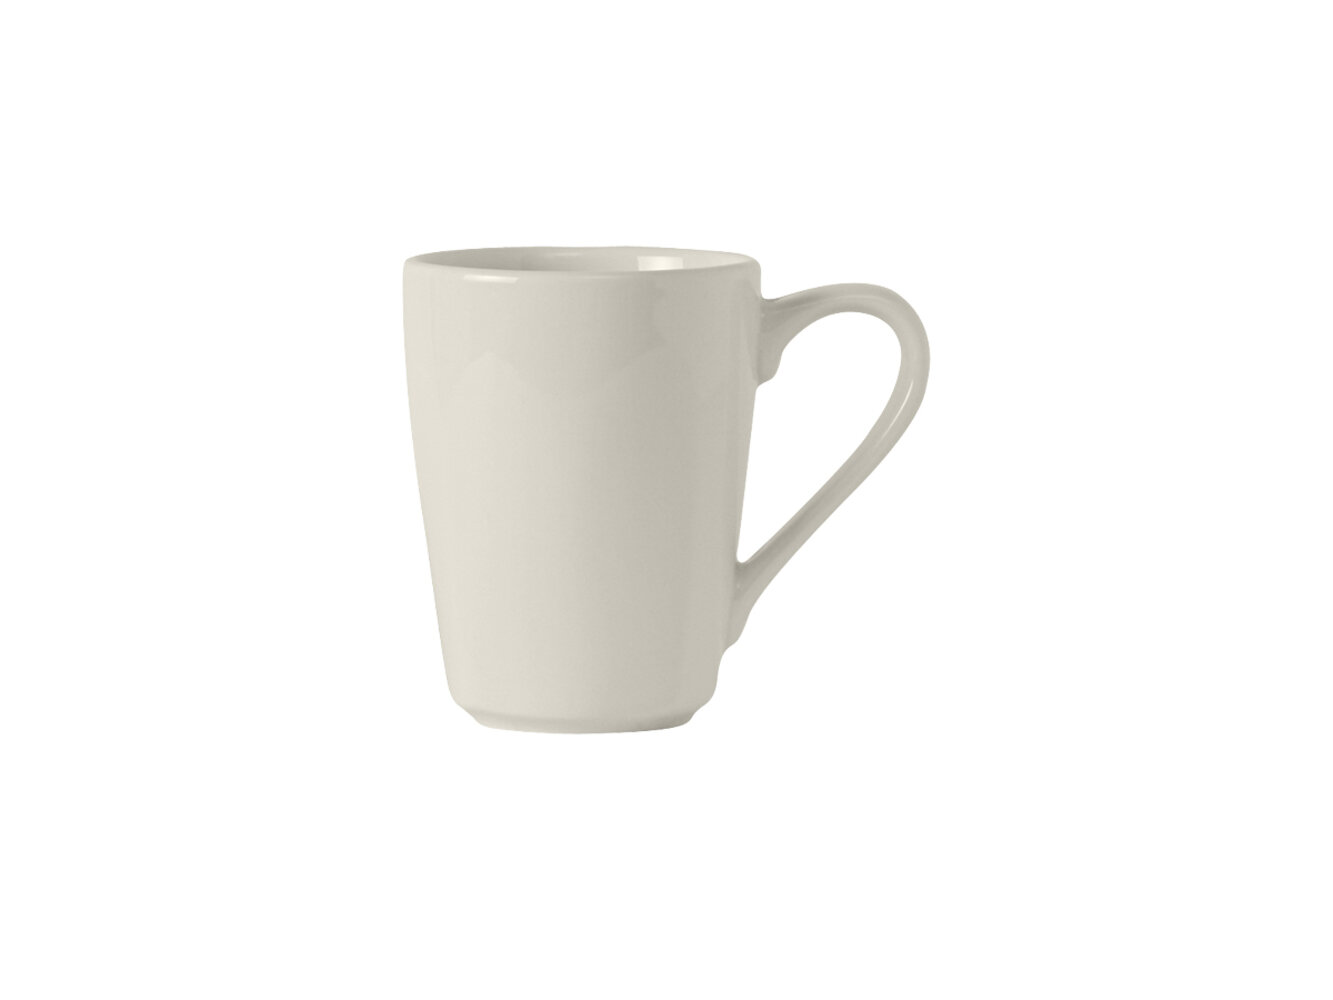 https://assets.wfcdn.com/im/70193102/compr-r85/6750/67507829/modena-ceramic-coffee-mug.jpg